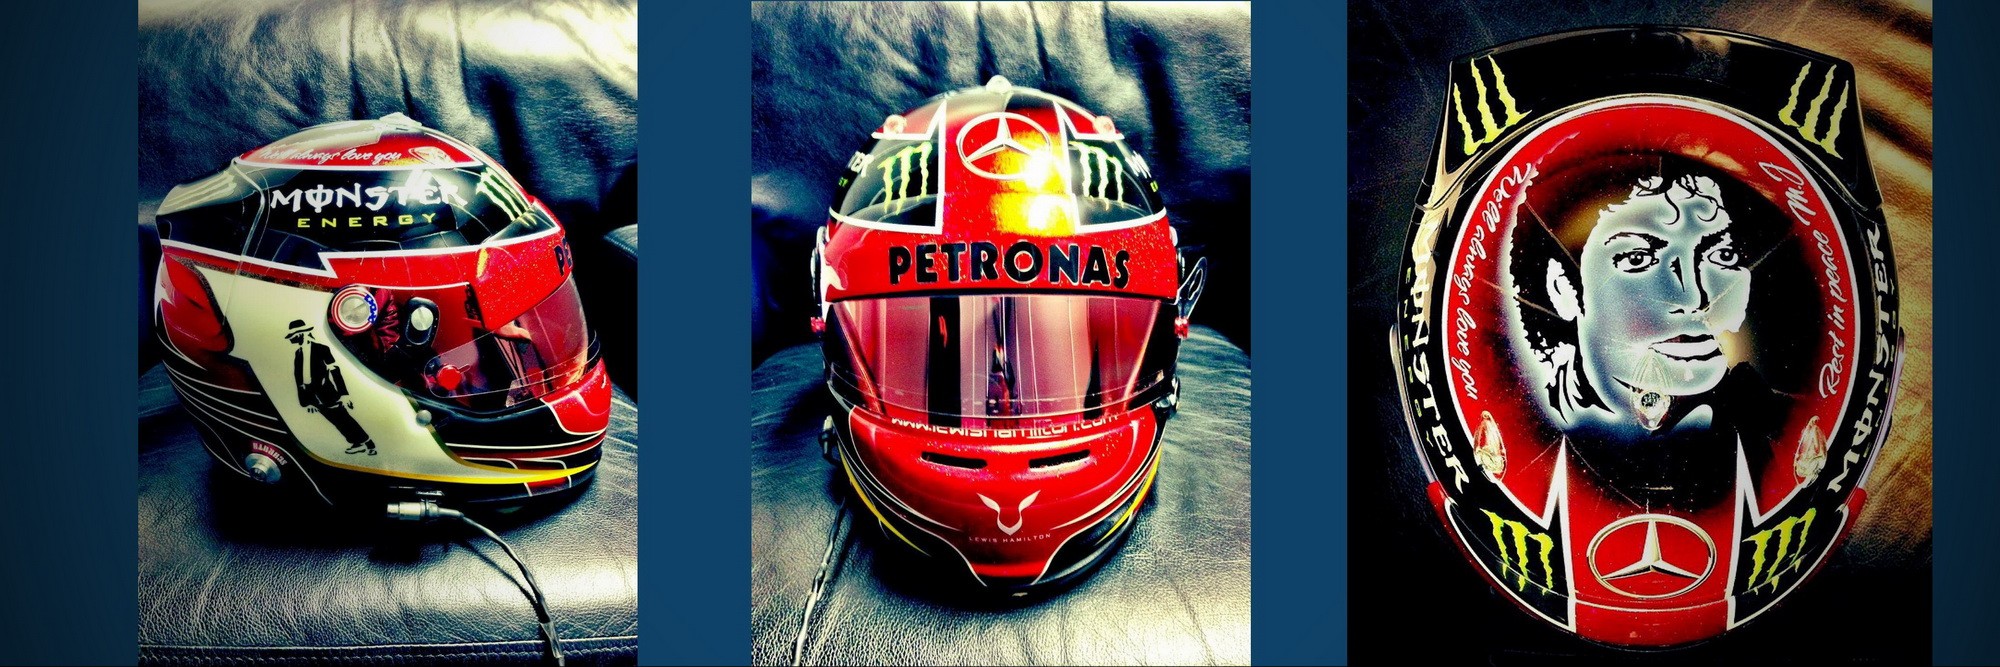 Шлем Льюиса Хэмилтона на Гран-При США 2013 | 2013 USA Grand Prix helmet of Lewis Hamilton